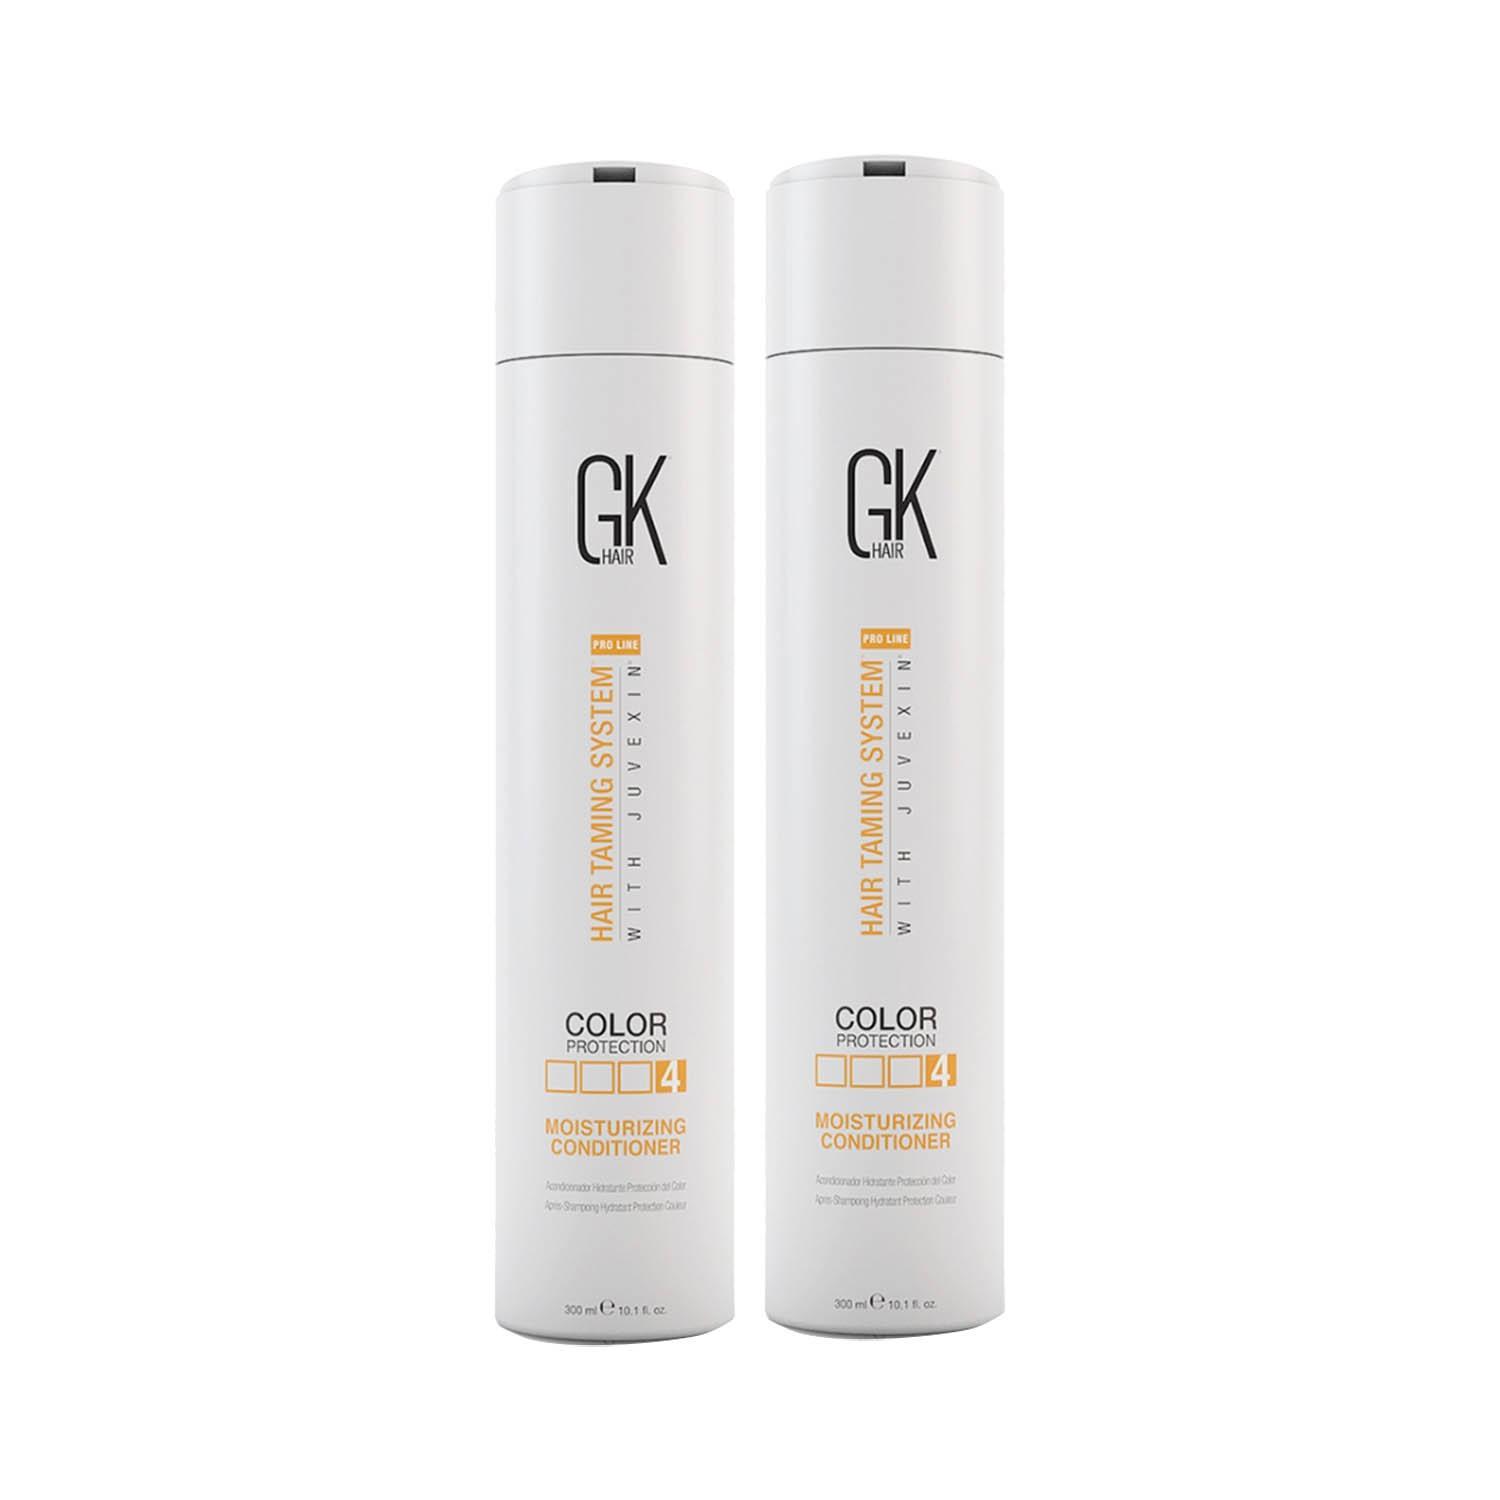 gk-hair-moisturizing-conditioner-300ml-pack-of-2